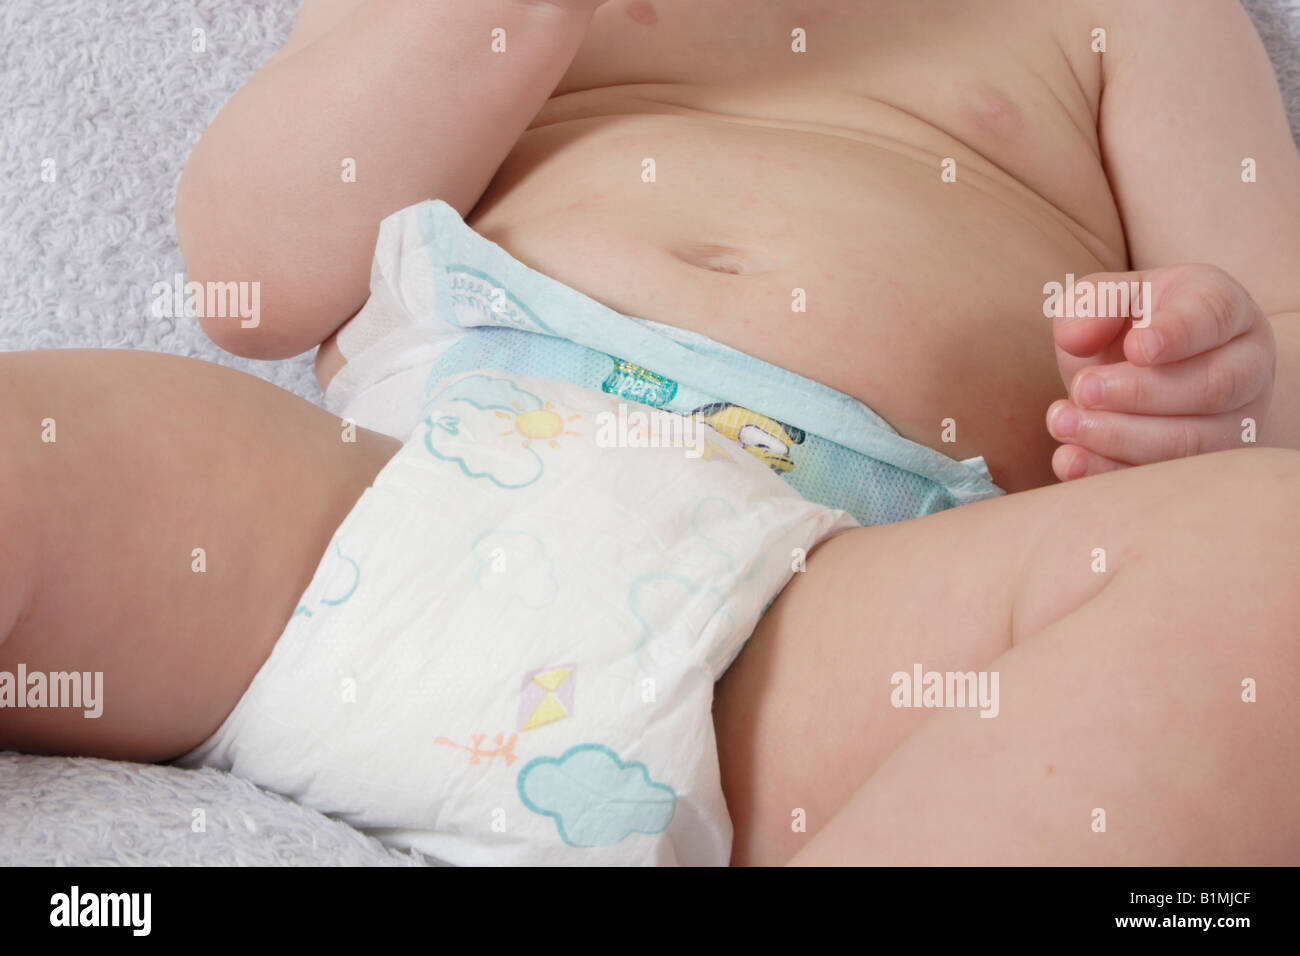 Chiudere il baby nel pannolino monouso Foto Stock